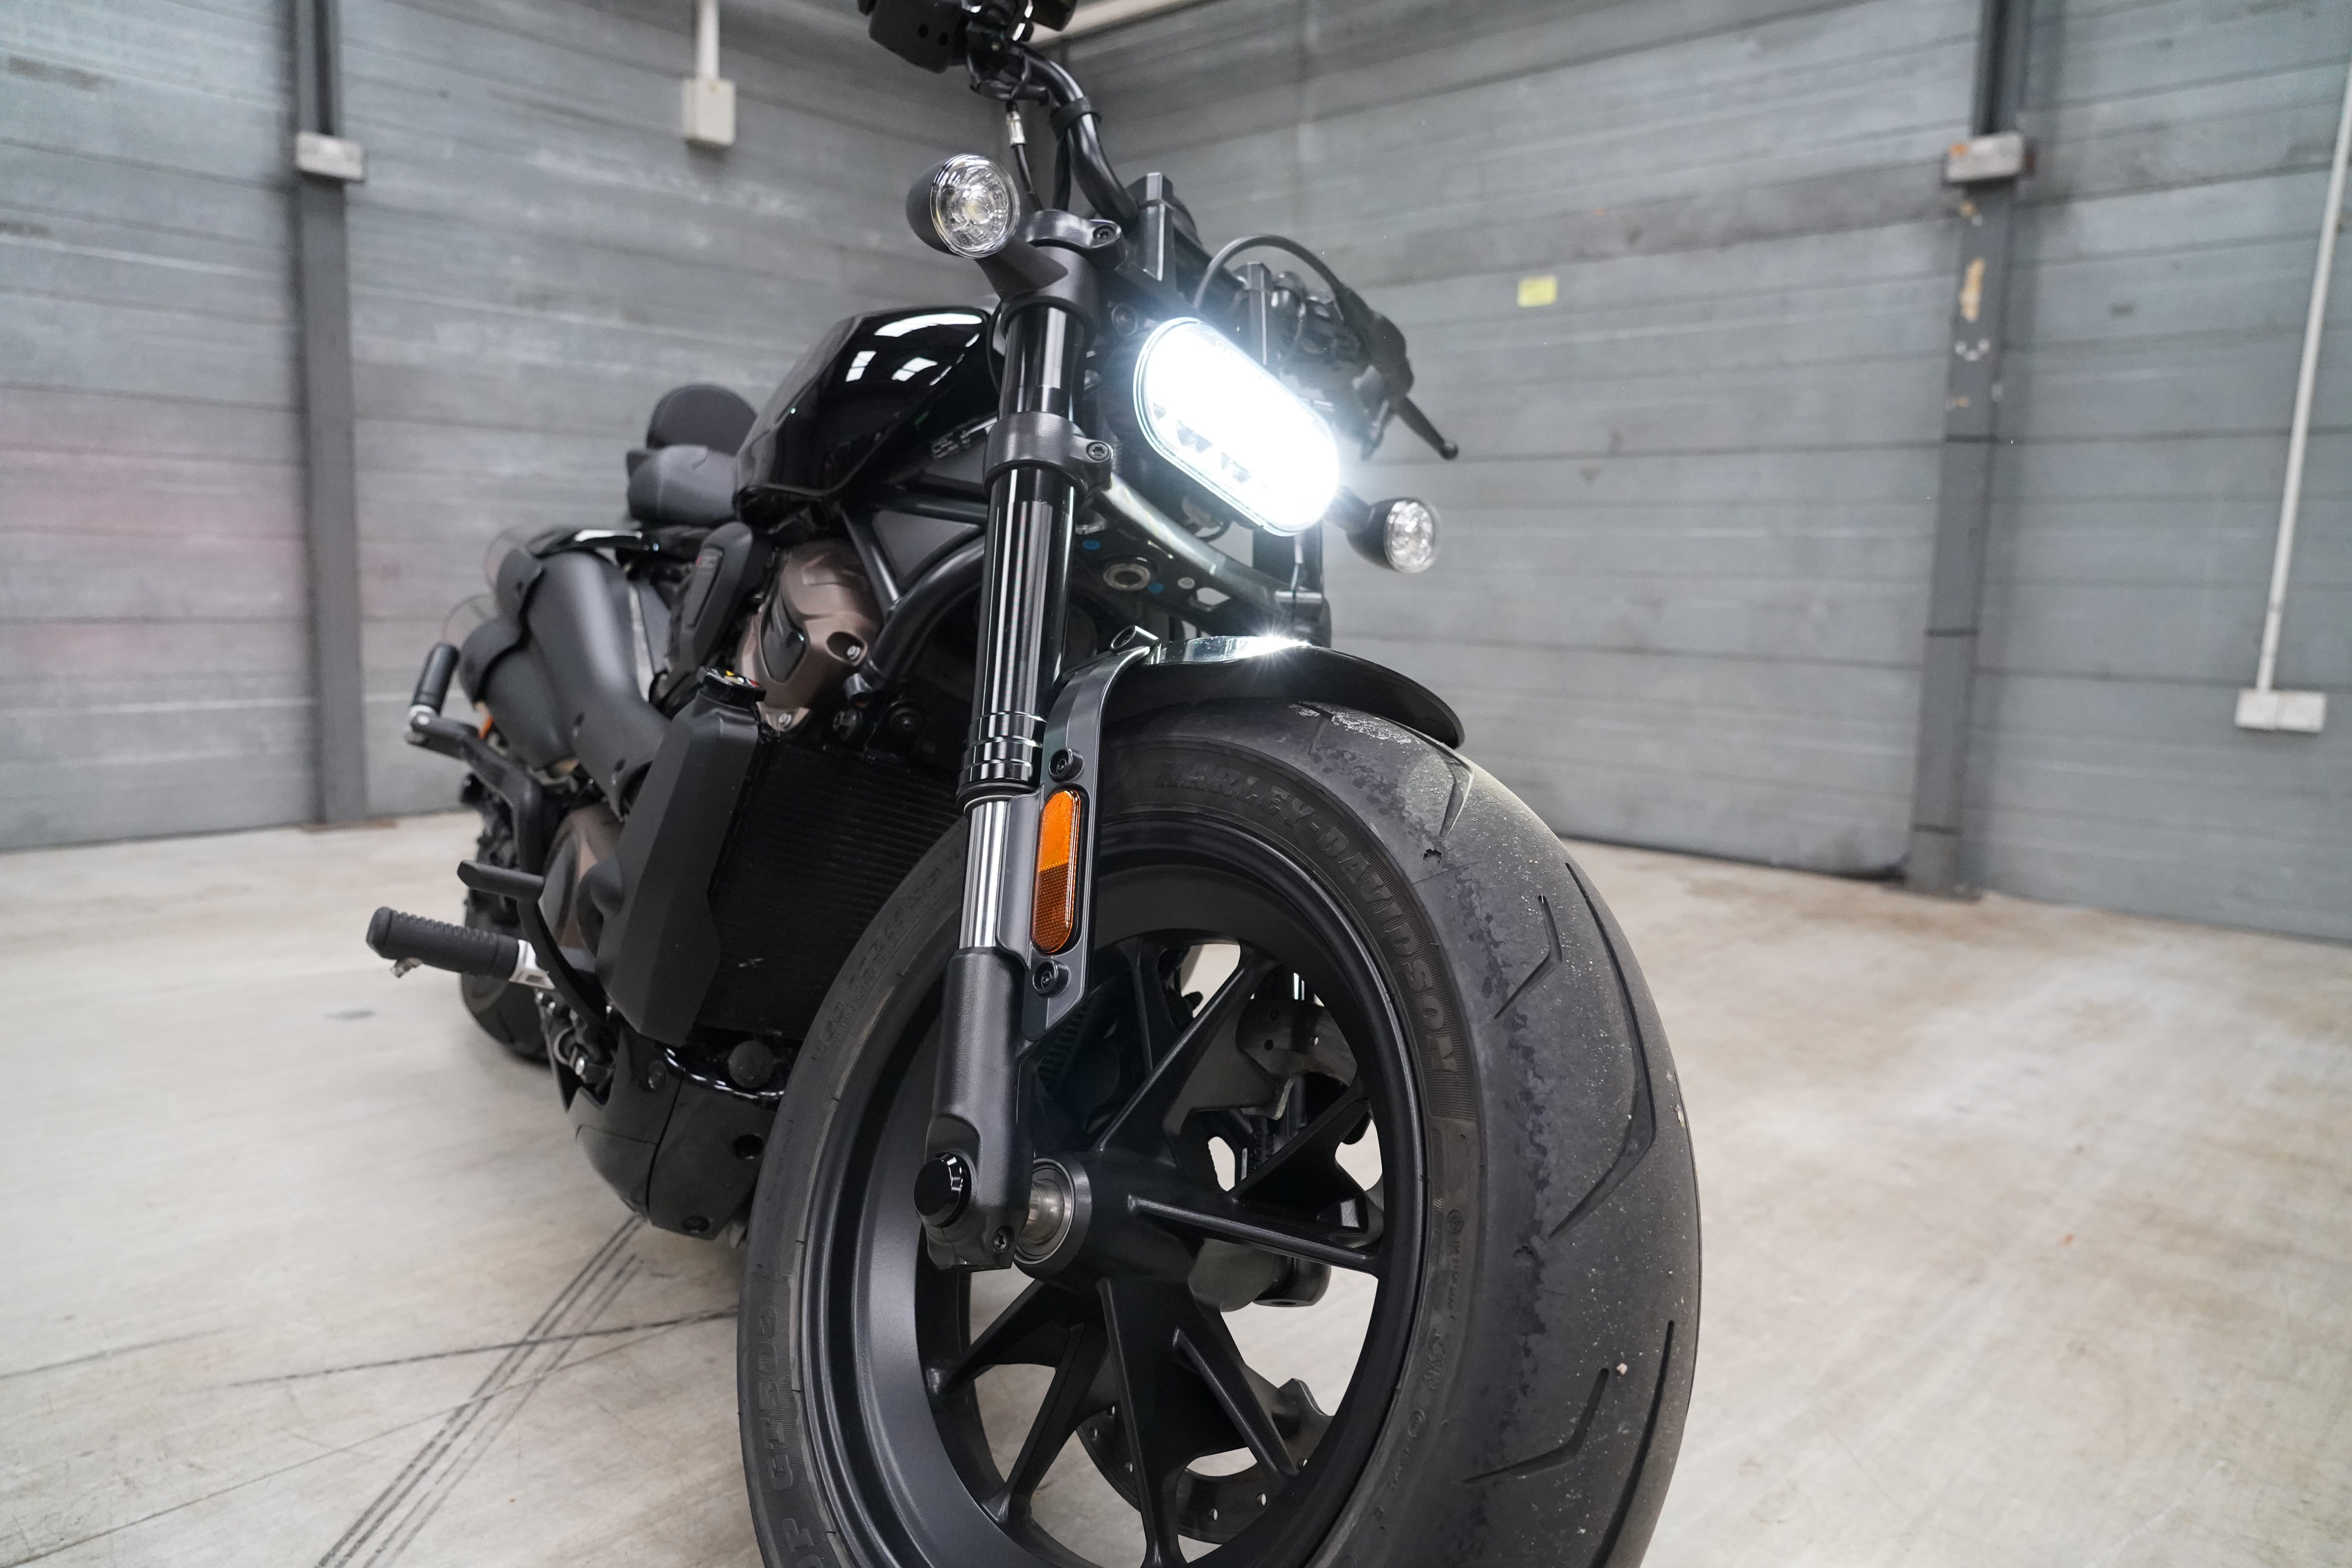 Harley-Davidson Sportster S in industrial studio space